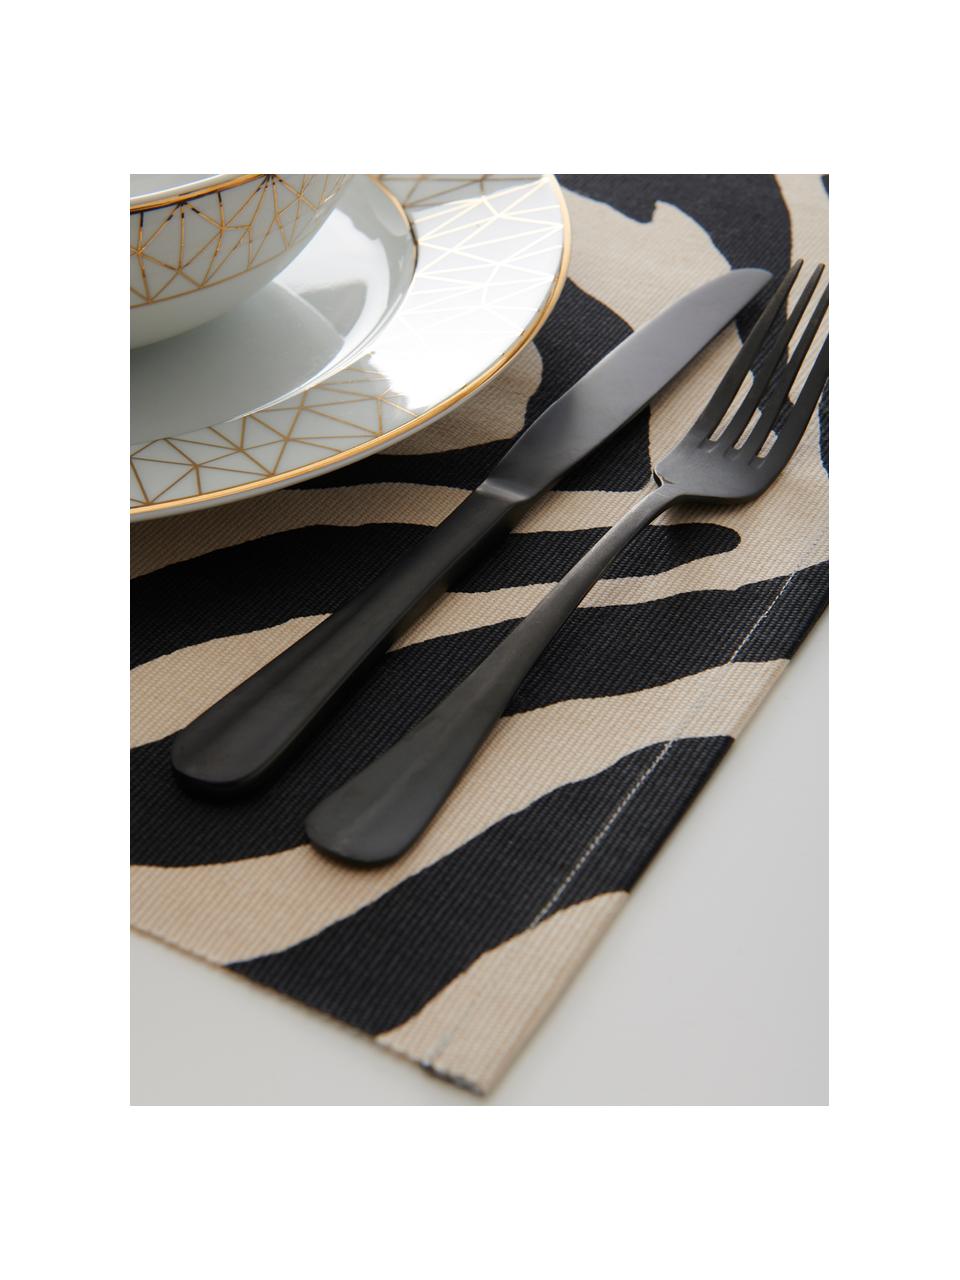 Bavlněné prostírání s potiskem zebry Jill, 2 ks, Bavlna, Černá, krémová, Š 35 cm, D 45 cm